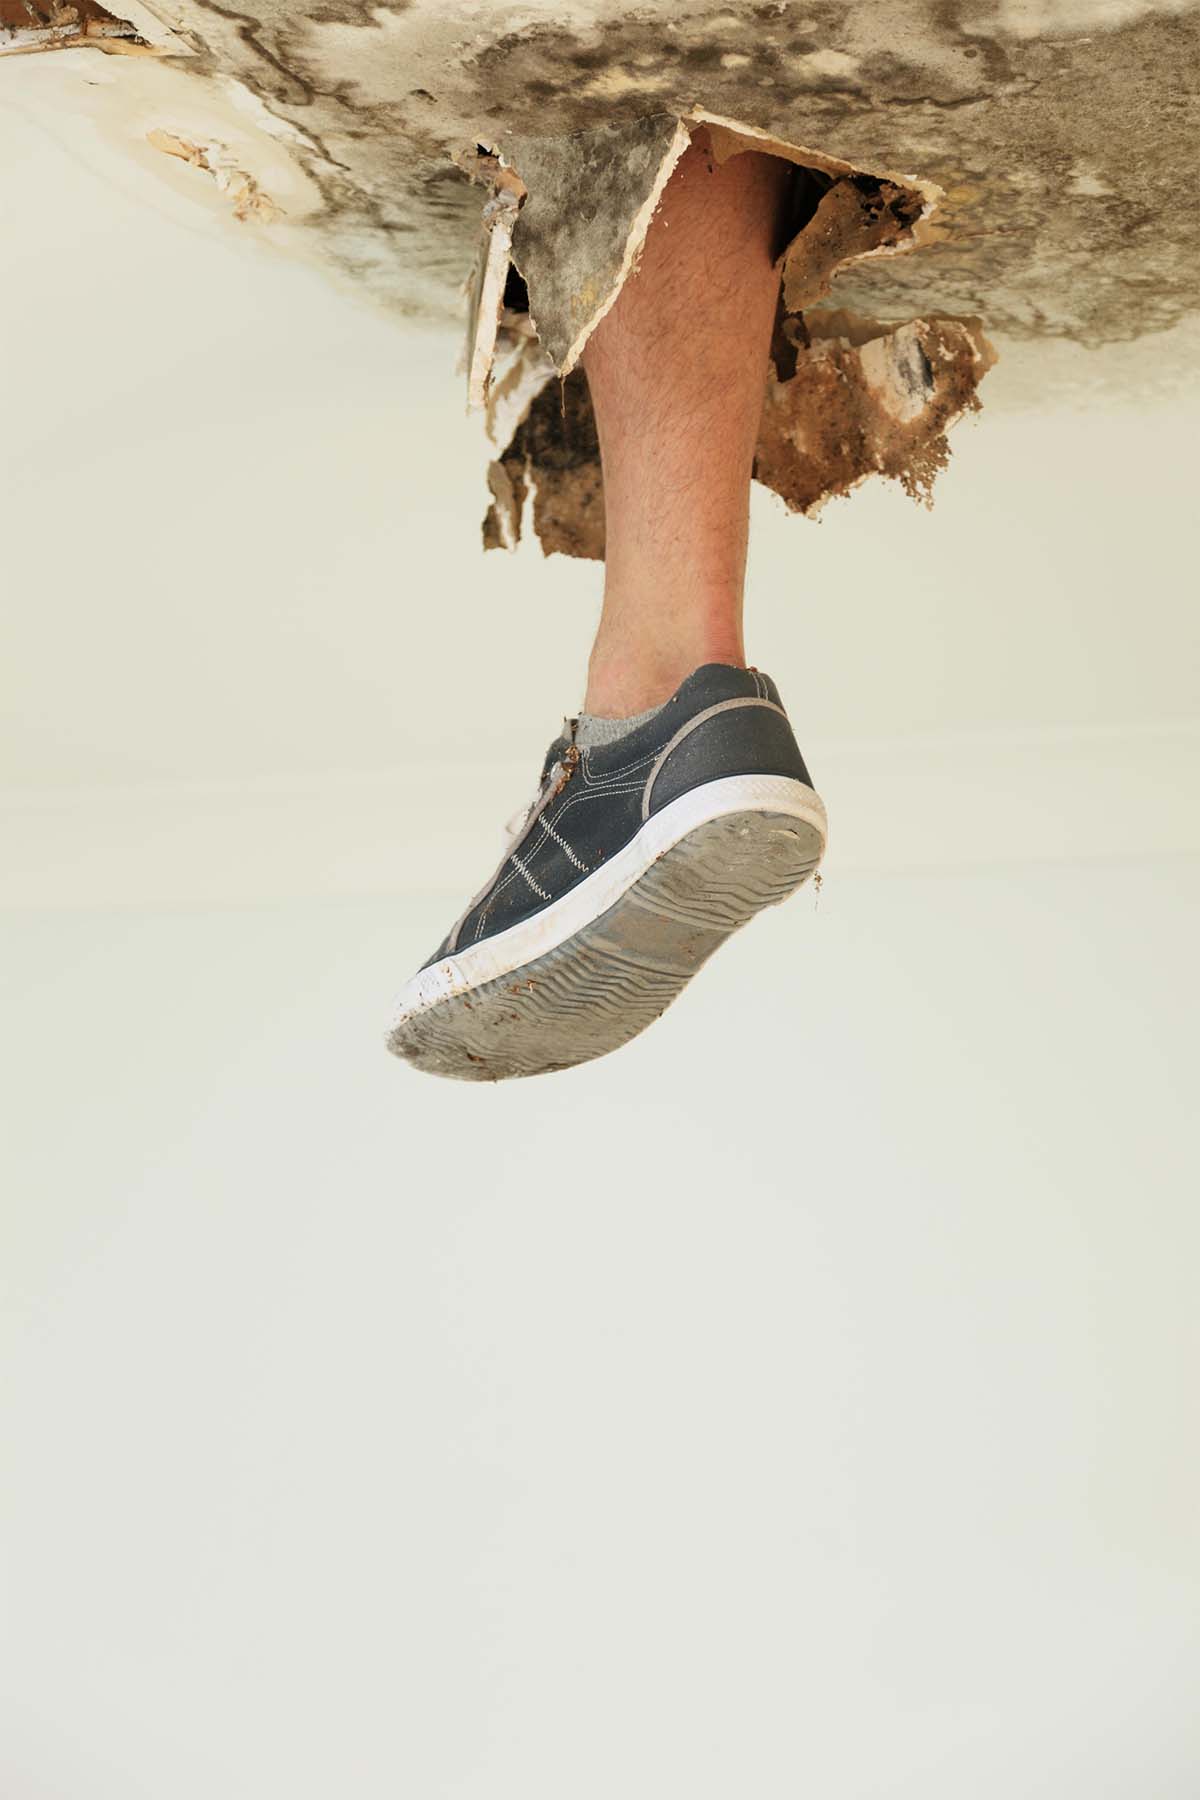 Foot Through Ceiling Requiring A Gyprock Repair